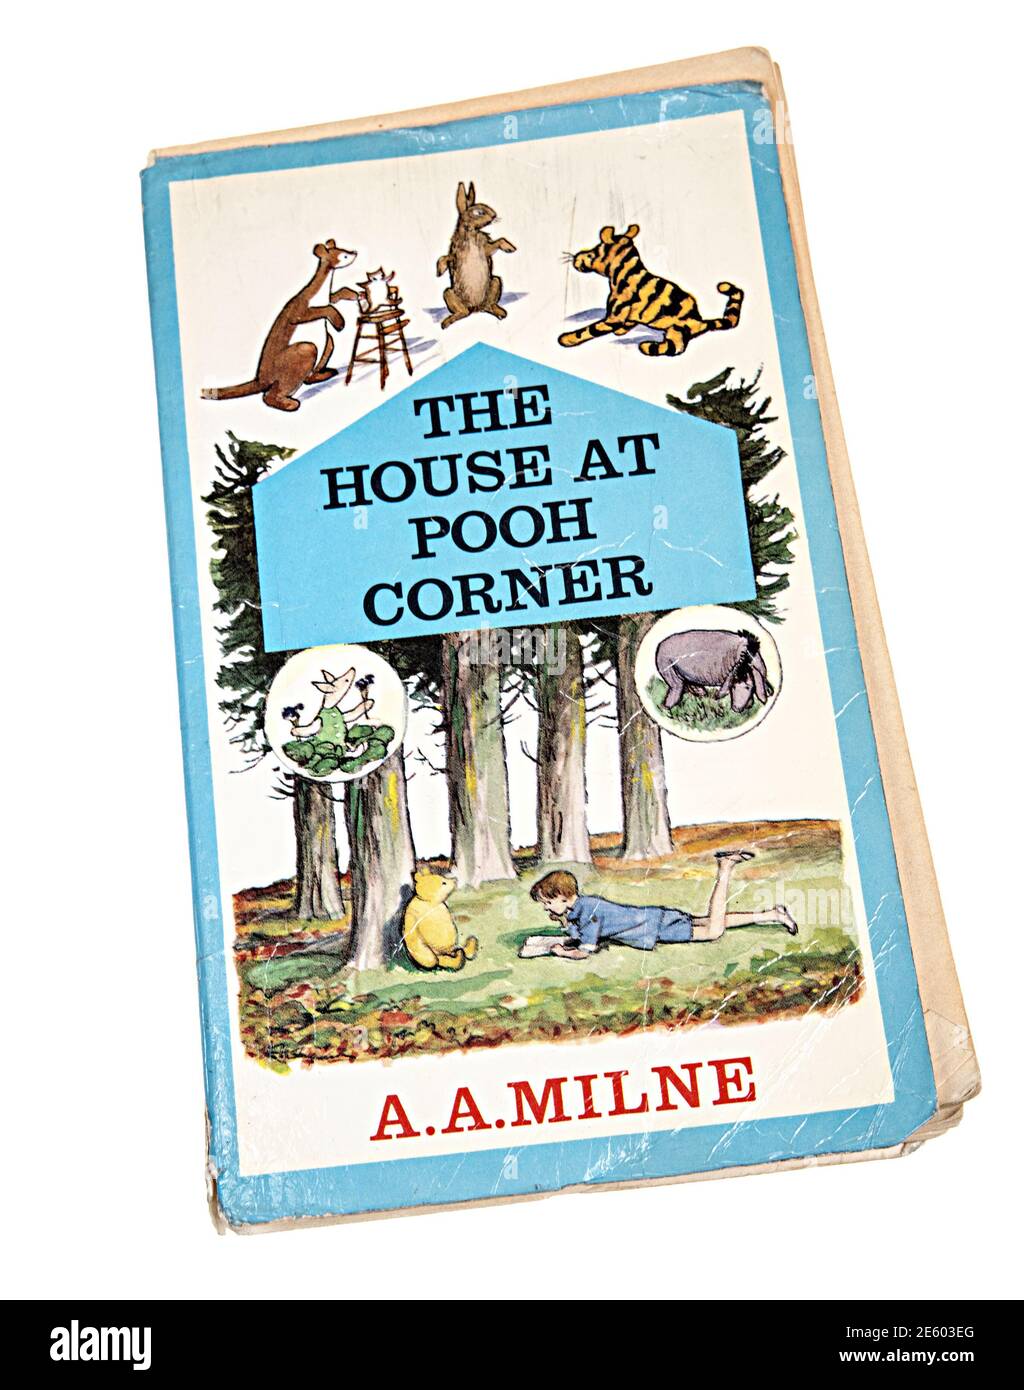 Livre de poche The House at Pooh Corner par A.A. Milne a publié pour la première fois en 1928 cette édition 1965 Banque D'Images